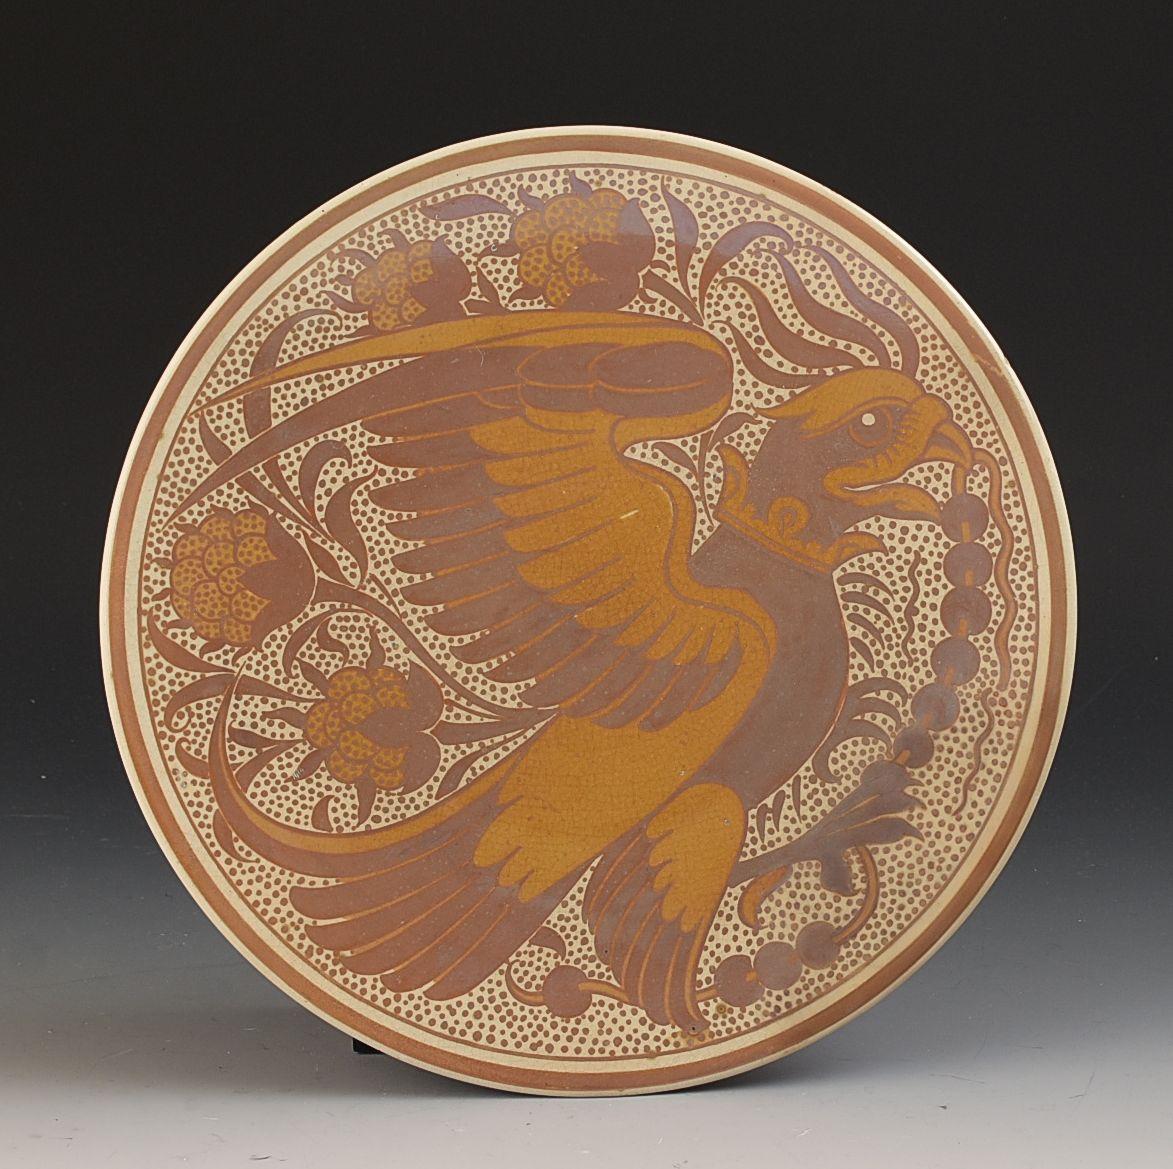 Assiette en forme de plat de 23 cm de diamètre superbement décorée, conçue par William De Morgan. Elle date des années 1880 et représente un aigle ou un animal similaire au milieu d'une décoration feuillue. Le bord a subi une restauration mineure et